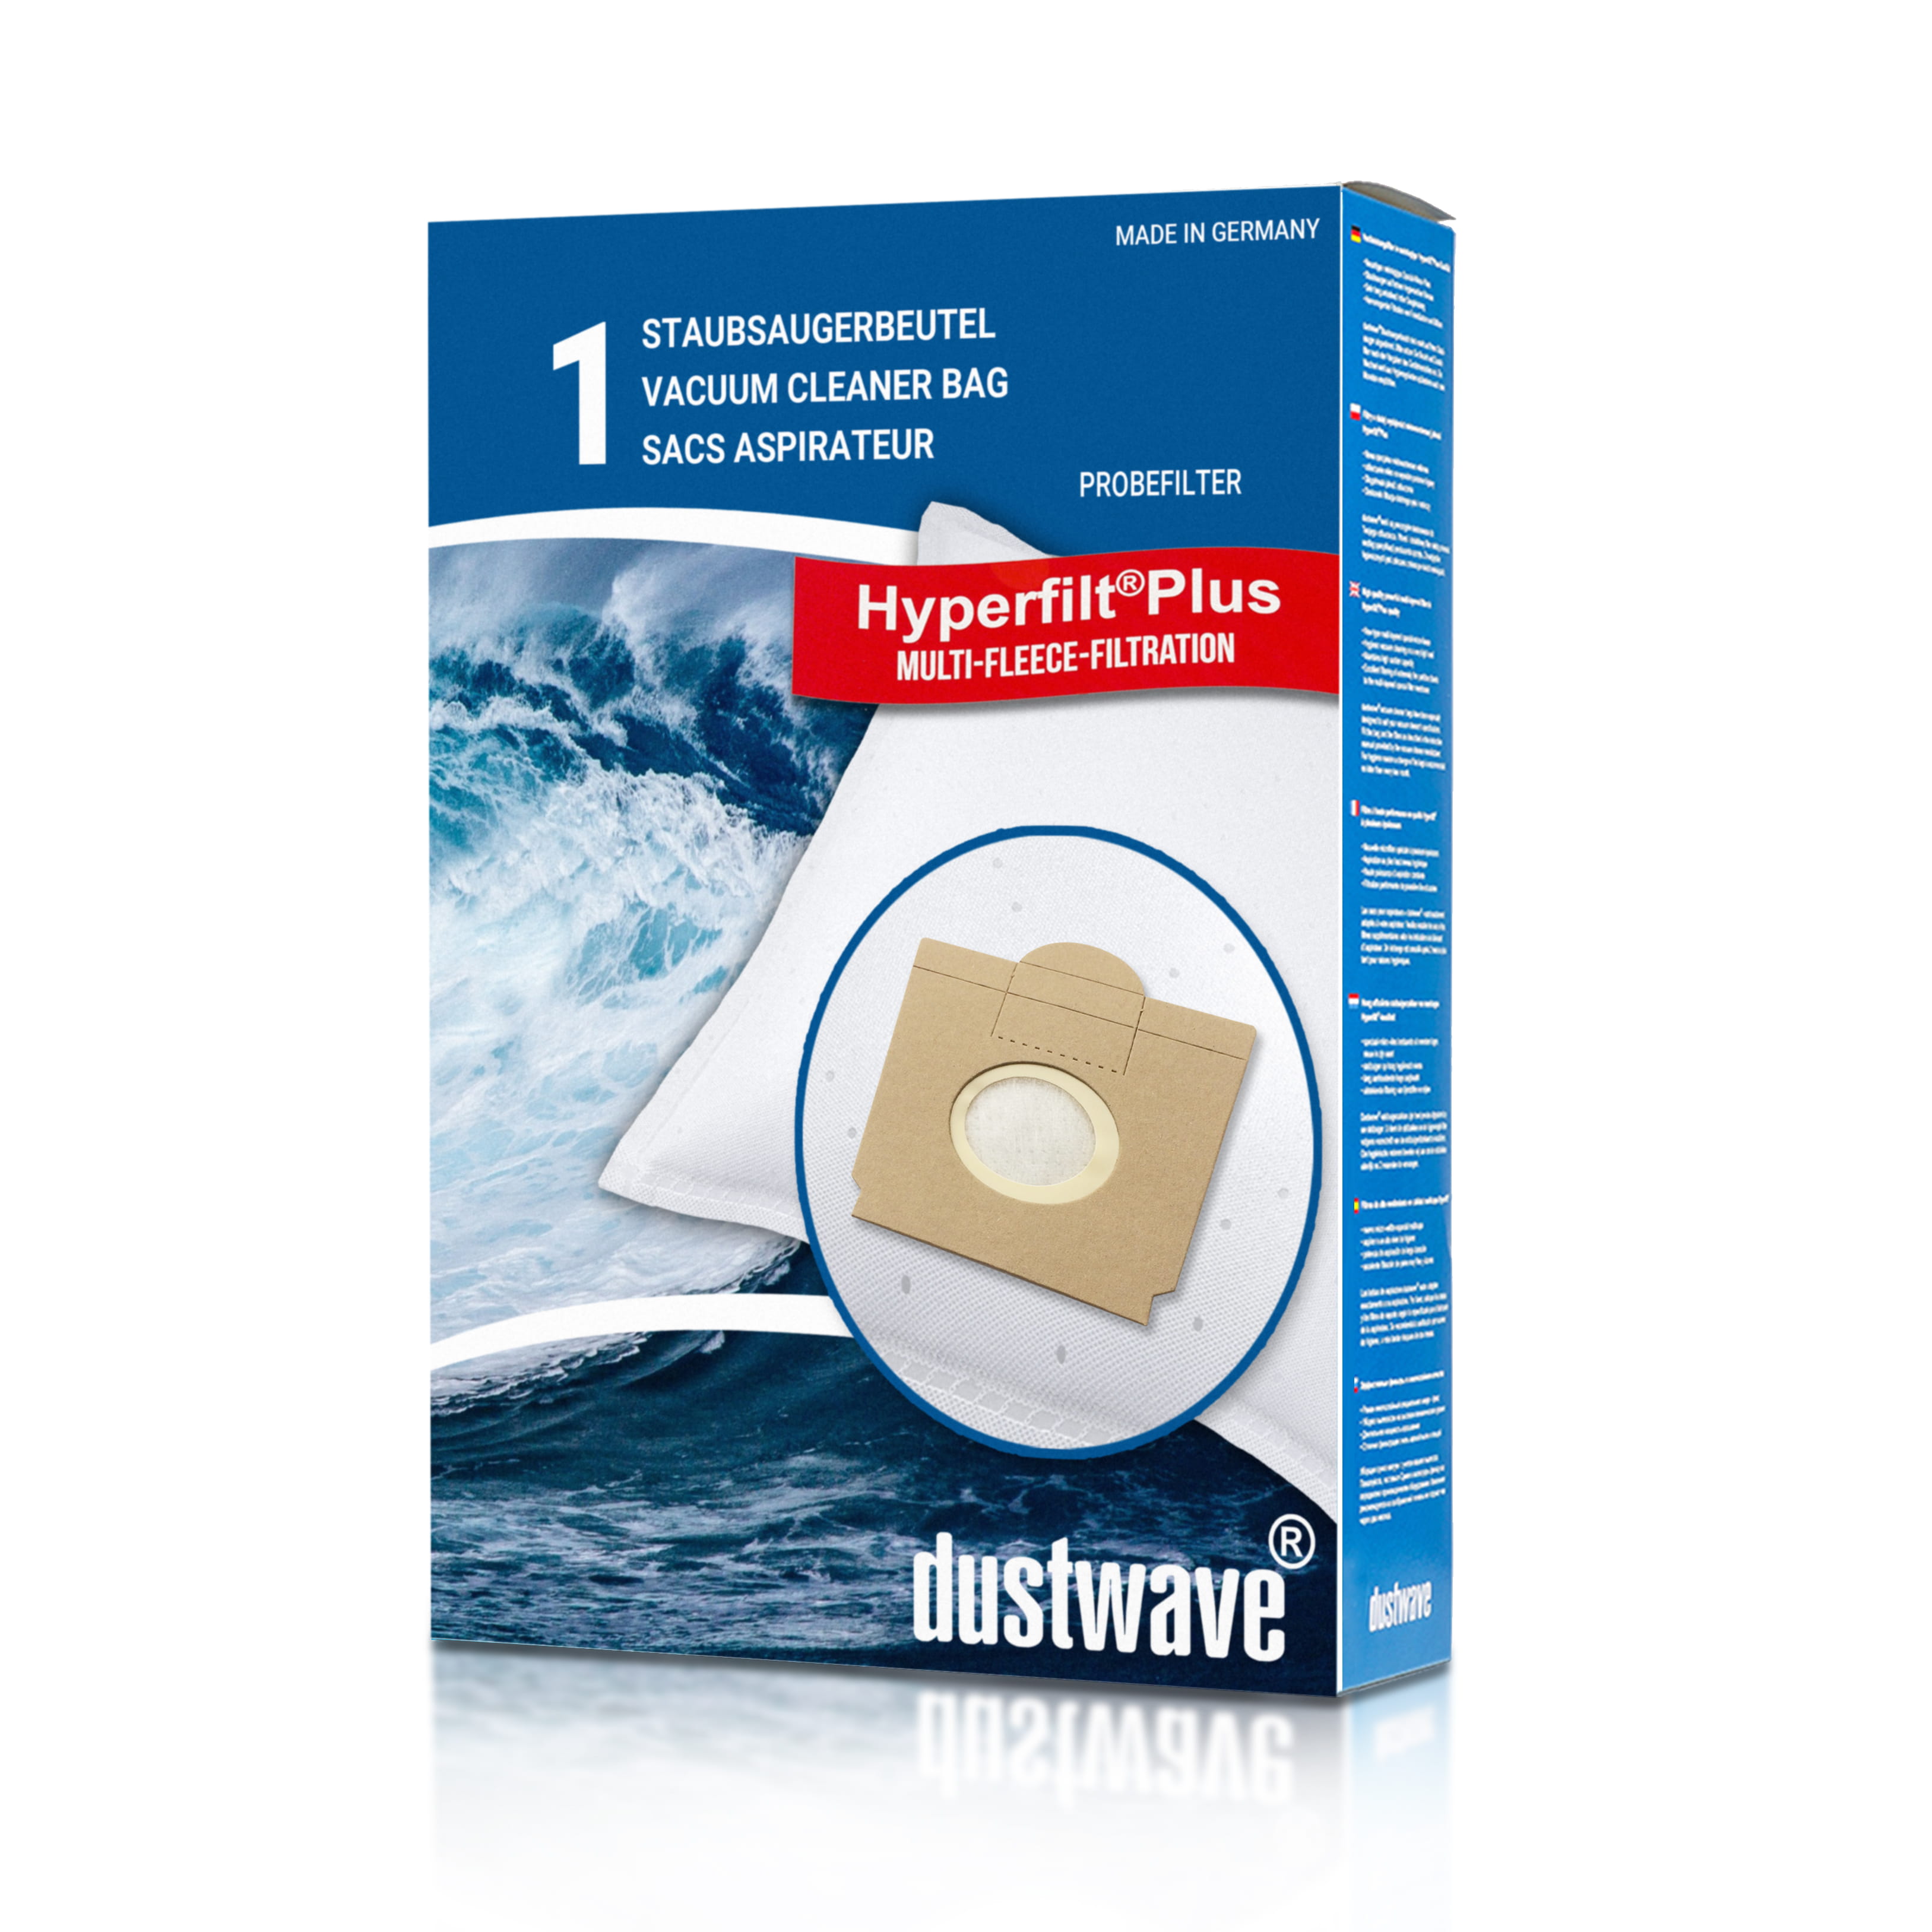 Dustwave® 1 Staubsaugerbeutel für Baur 340.755 / 340-755 - hocheffizient mit Hygieneverschluss - Made in Germany